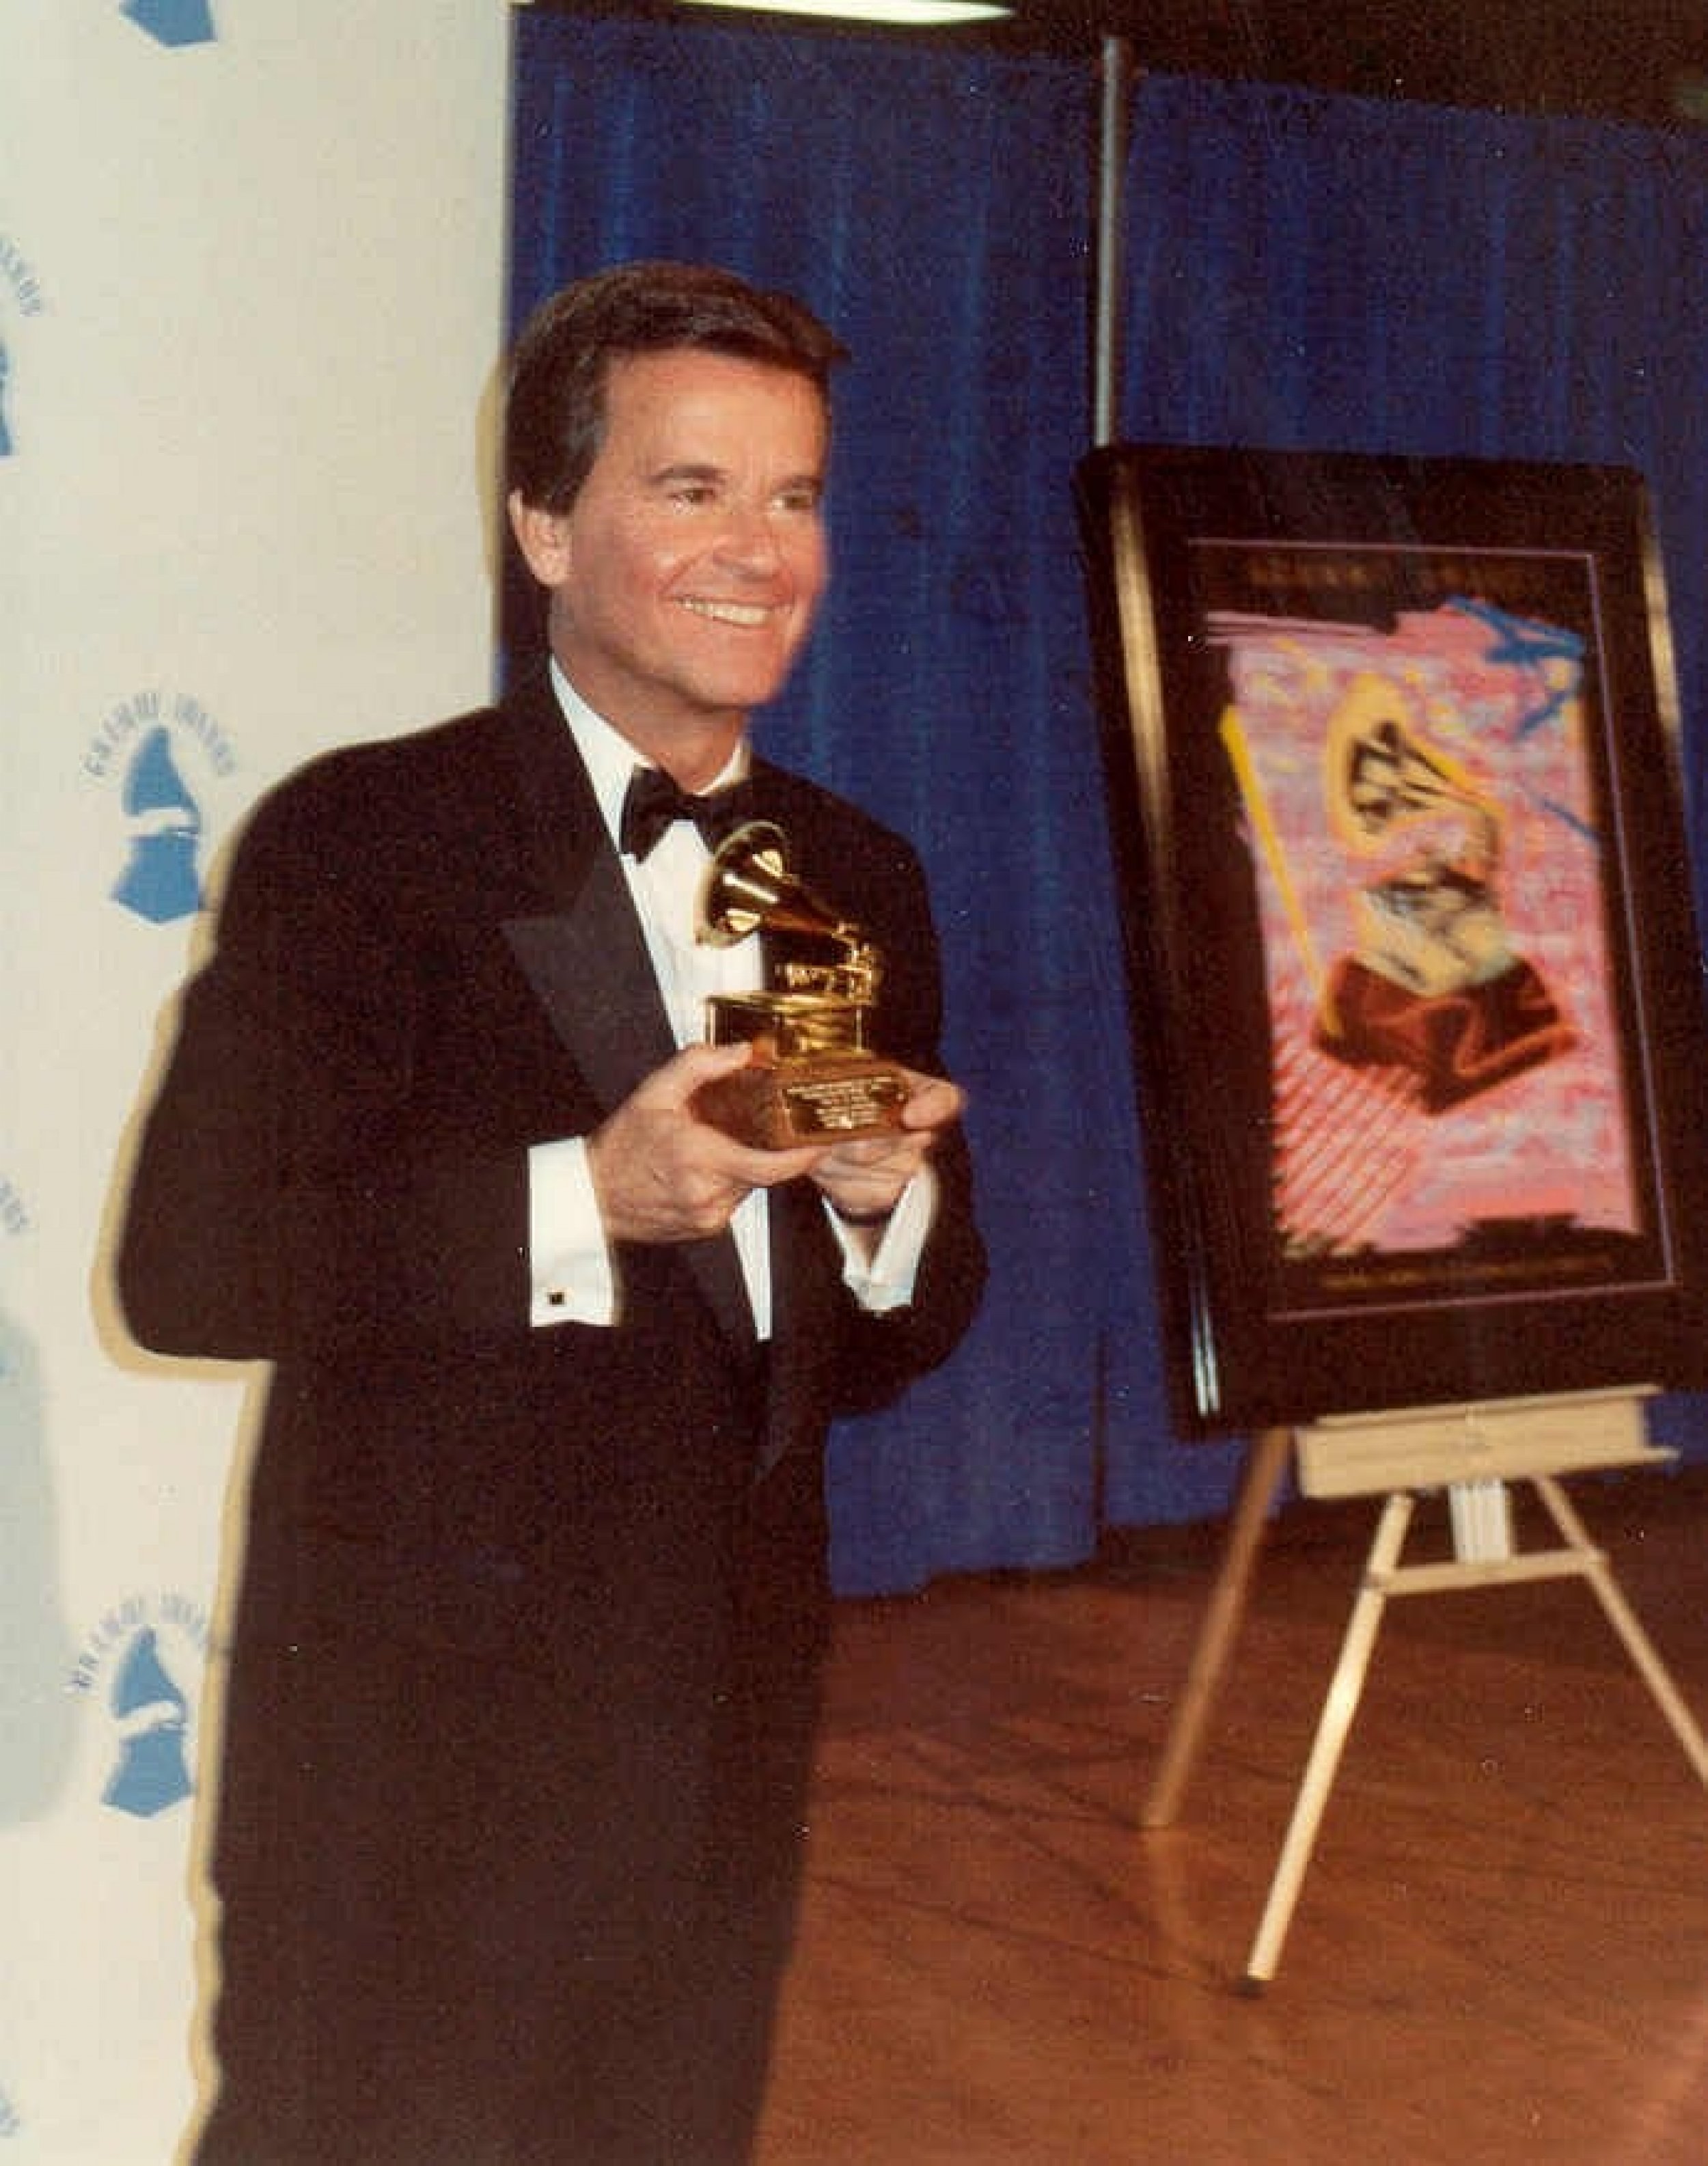 Dick Clark Wins A Grammy